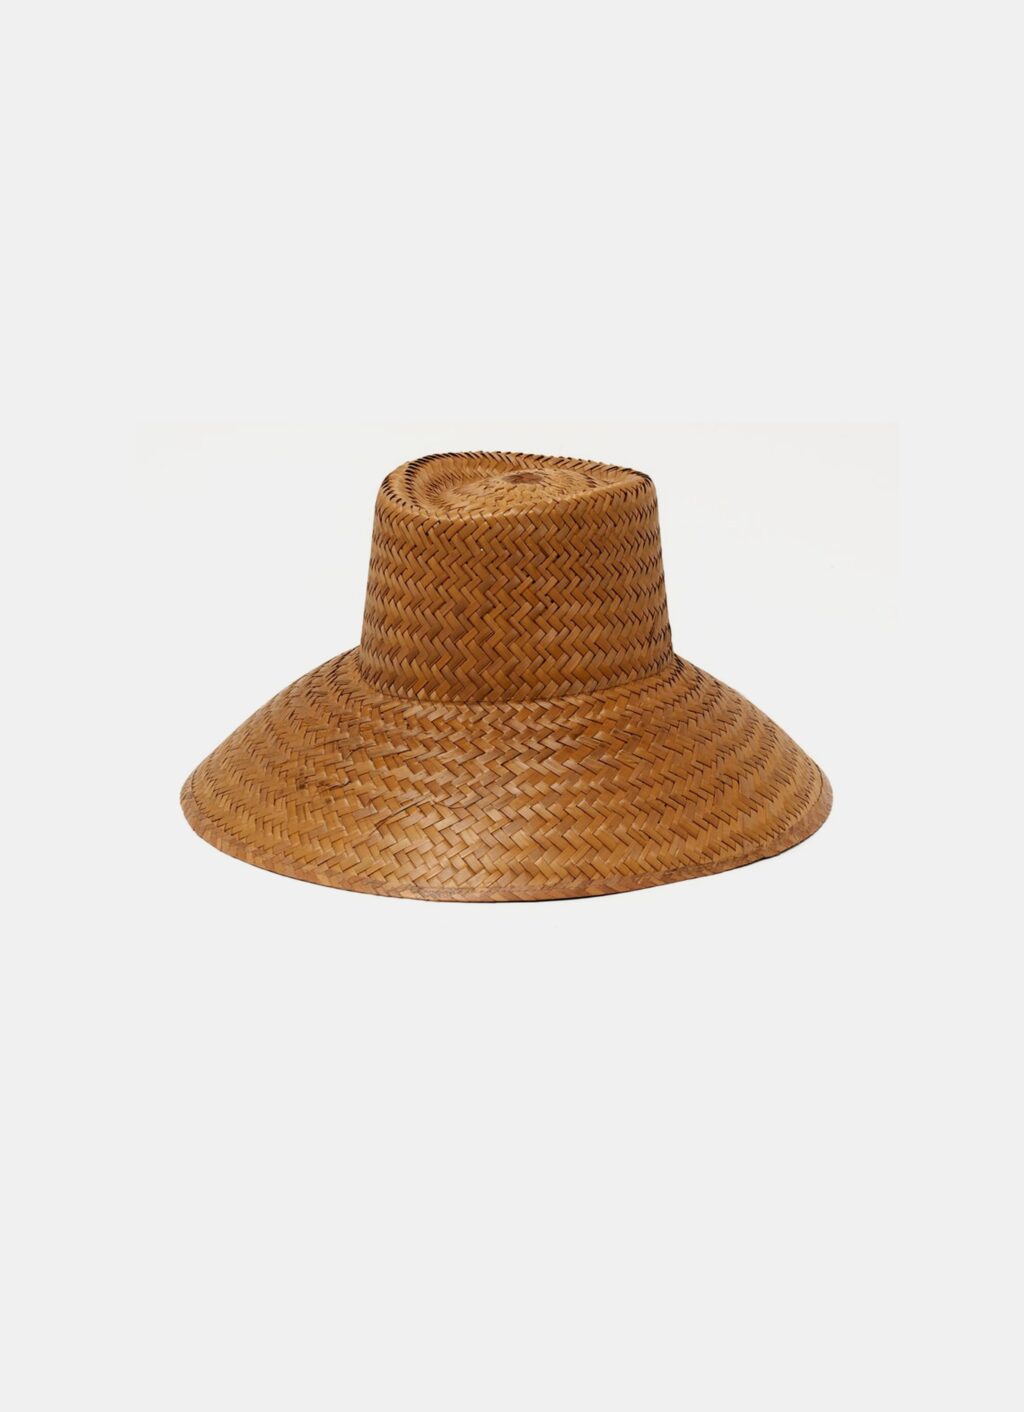 Communitie Marfa - Garden Hat - Cooked Palm Straw